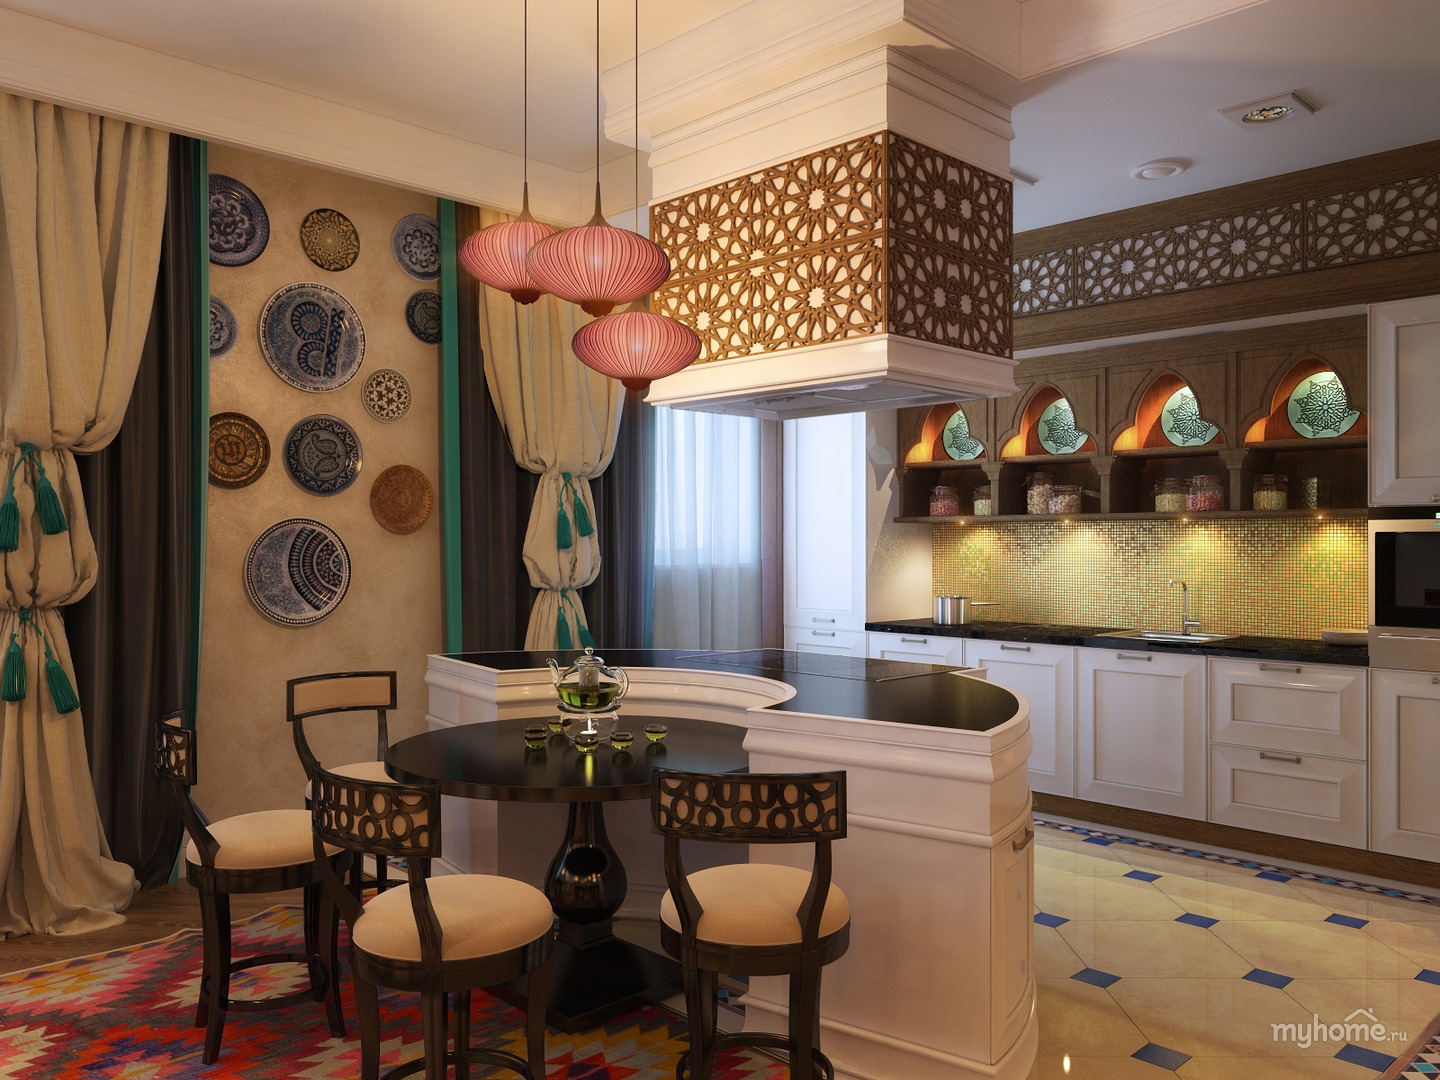 Дизайн гостиной в арабском стиле фото » Современный дизайн на Vip-1gl